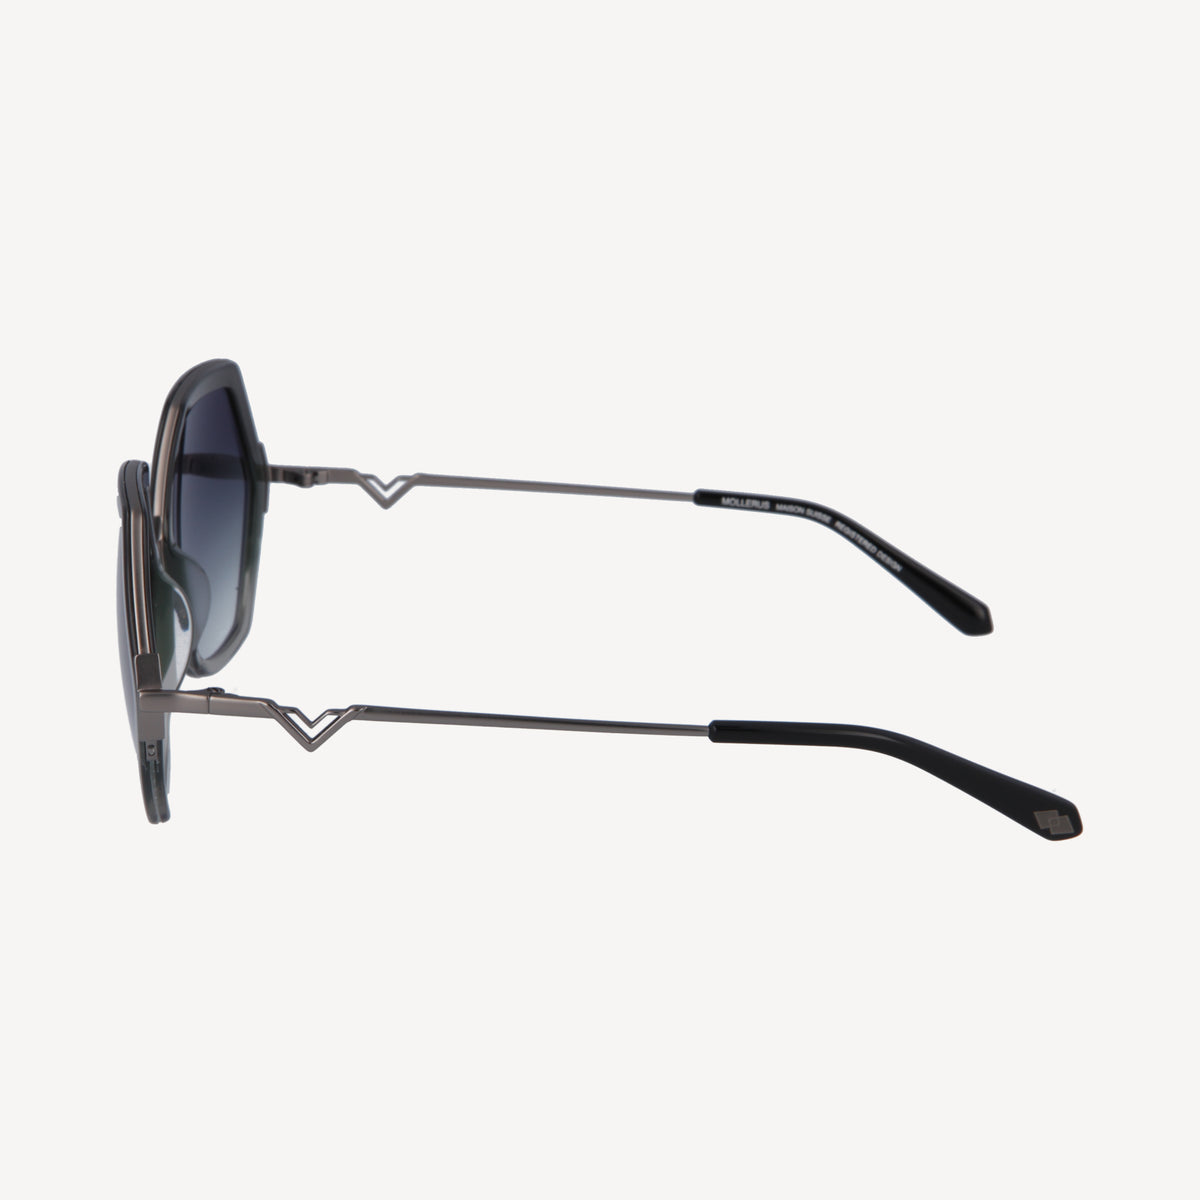 AGNEL | Sonnenbrille classic schwarz/altsilber - von der Seite